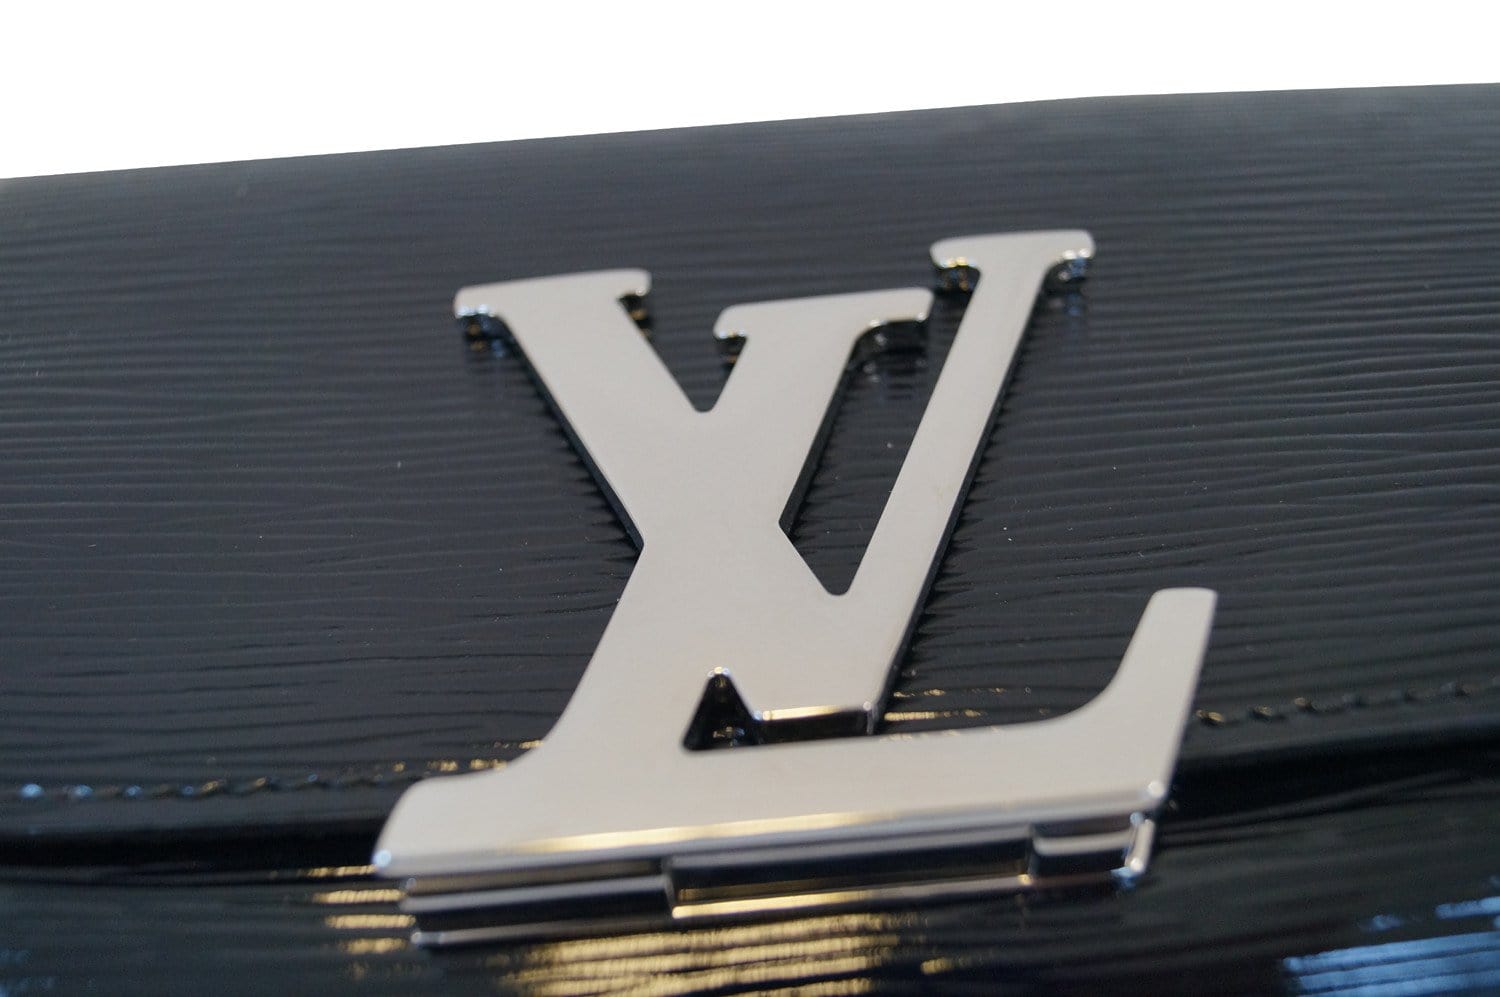 Louis Vuitton Epi Leather Bag – LuxuryPromise